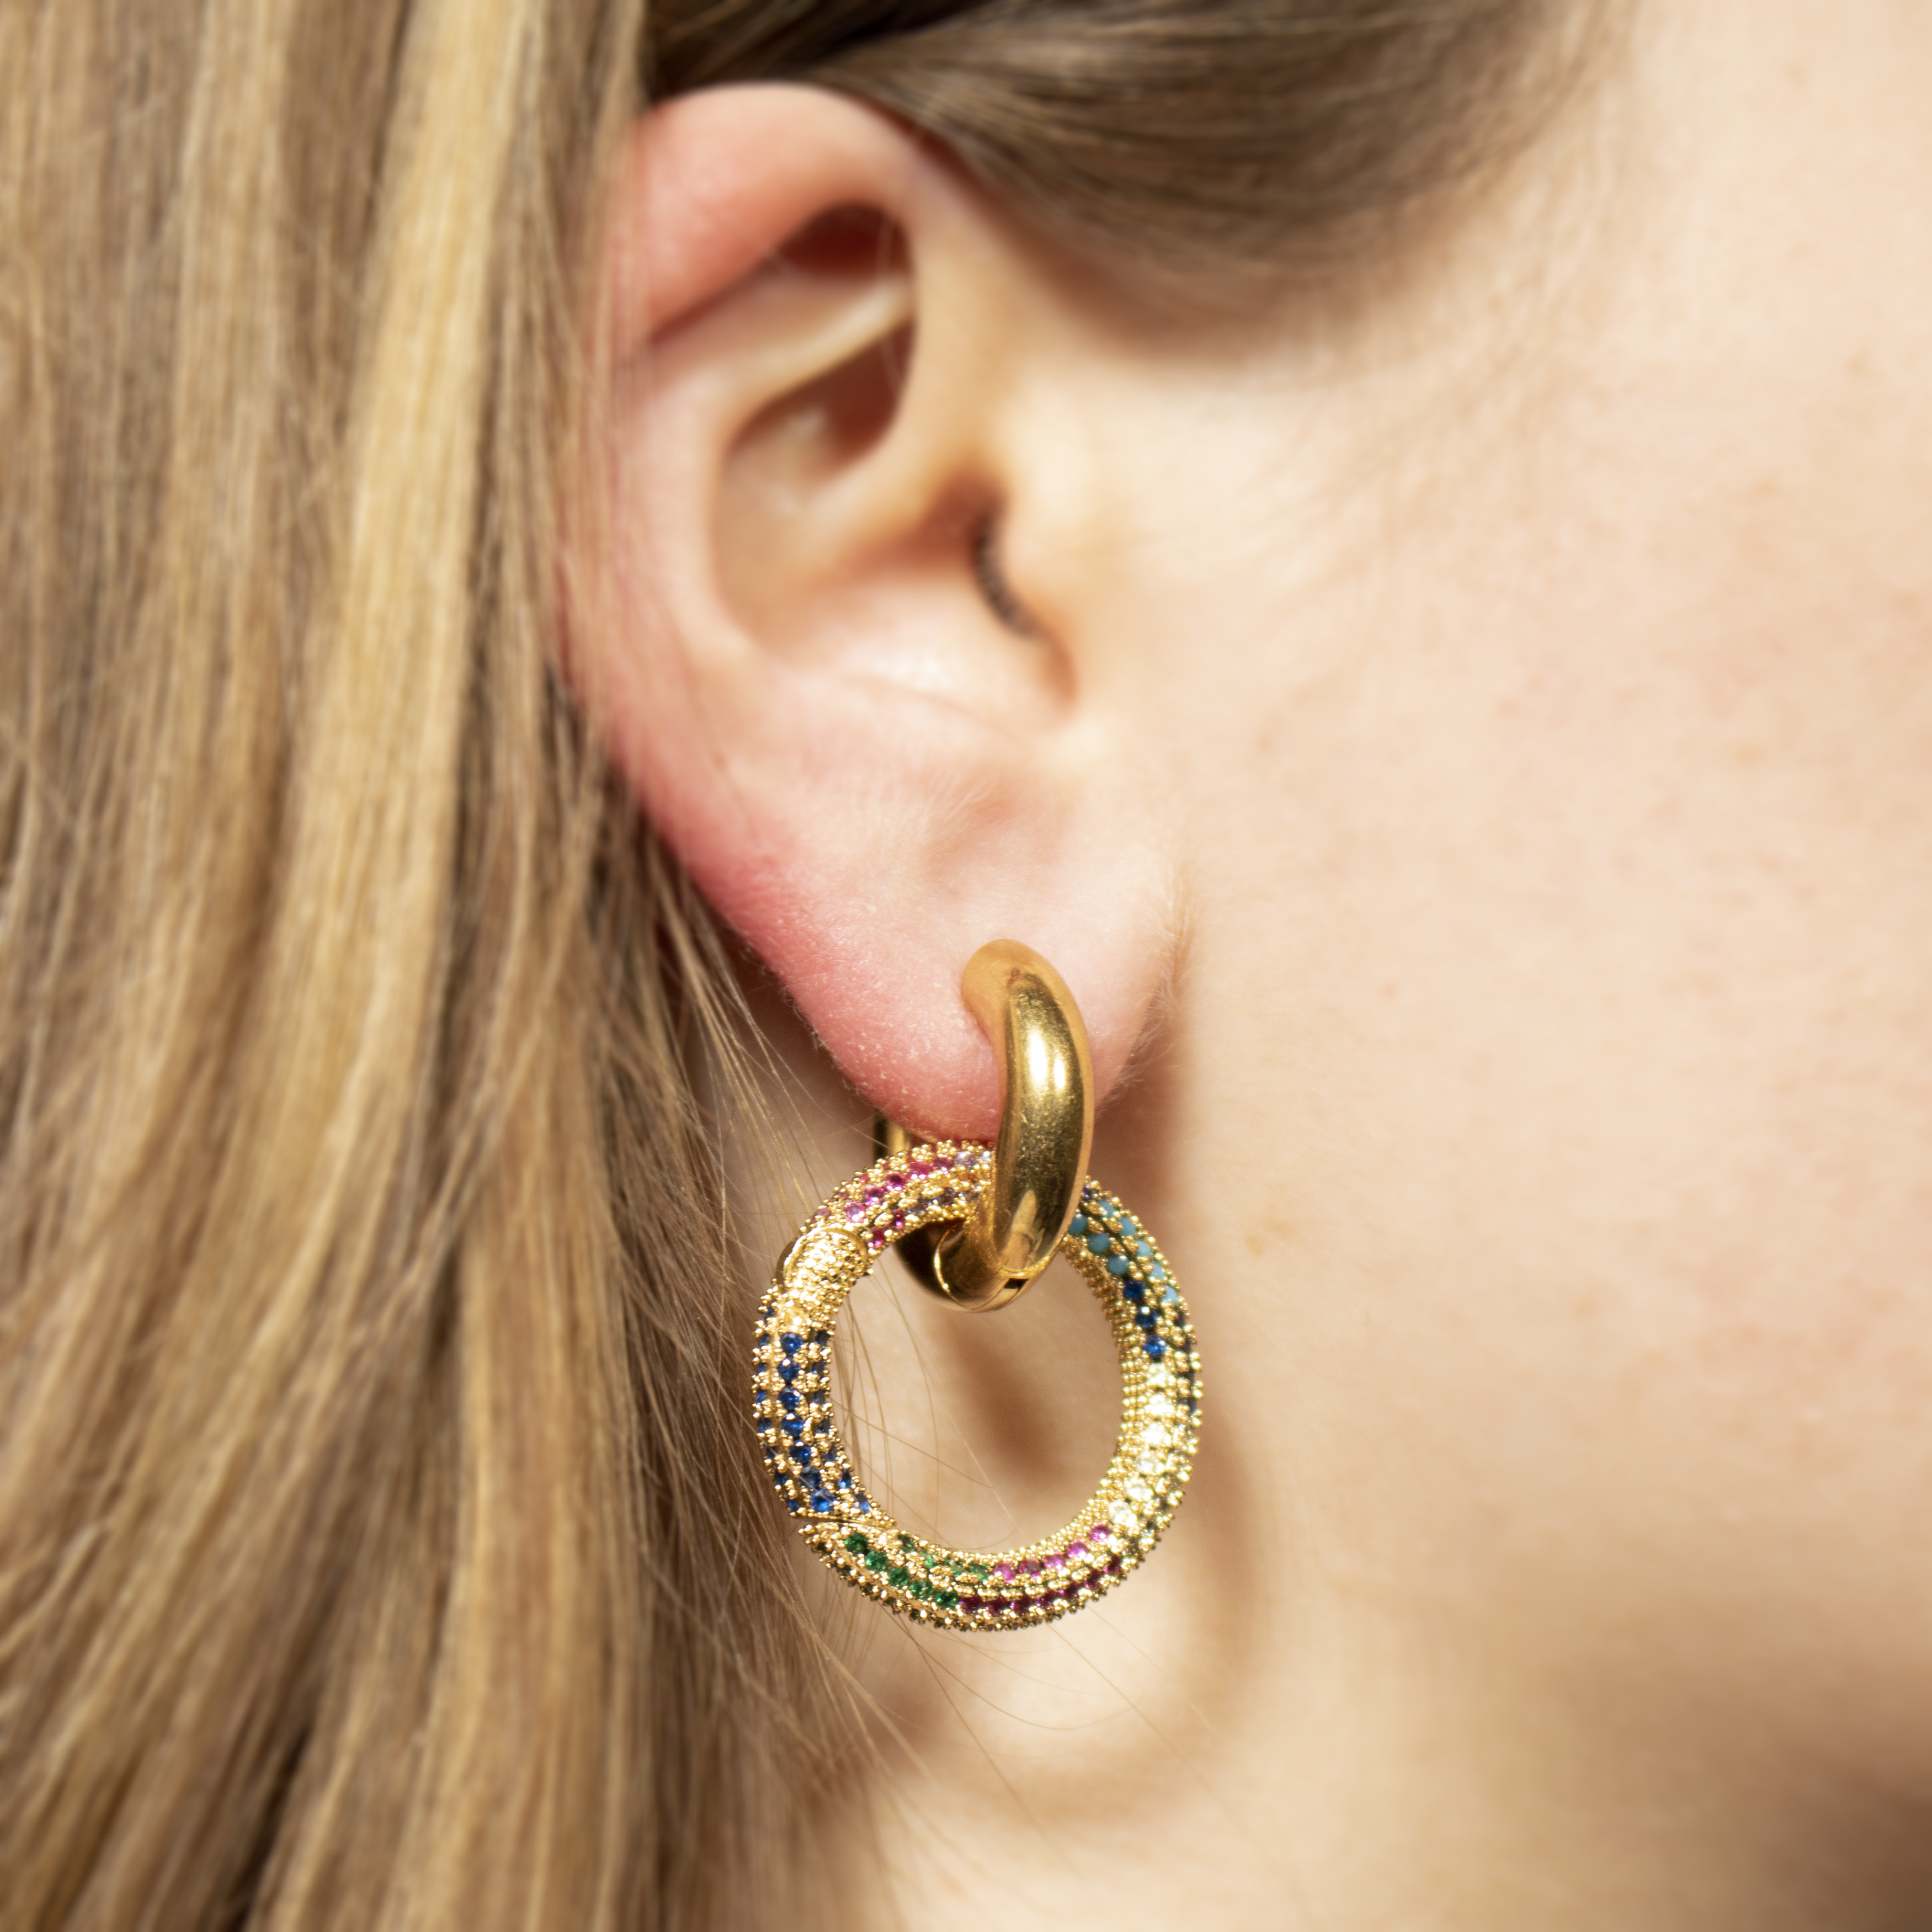 Hoop earrings with rainbow crystals